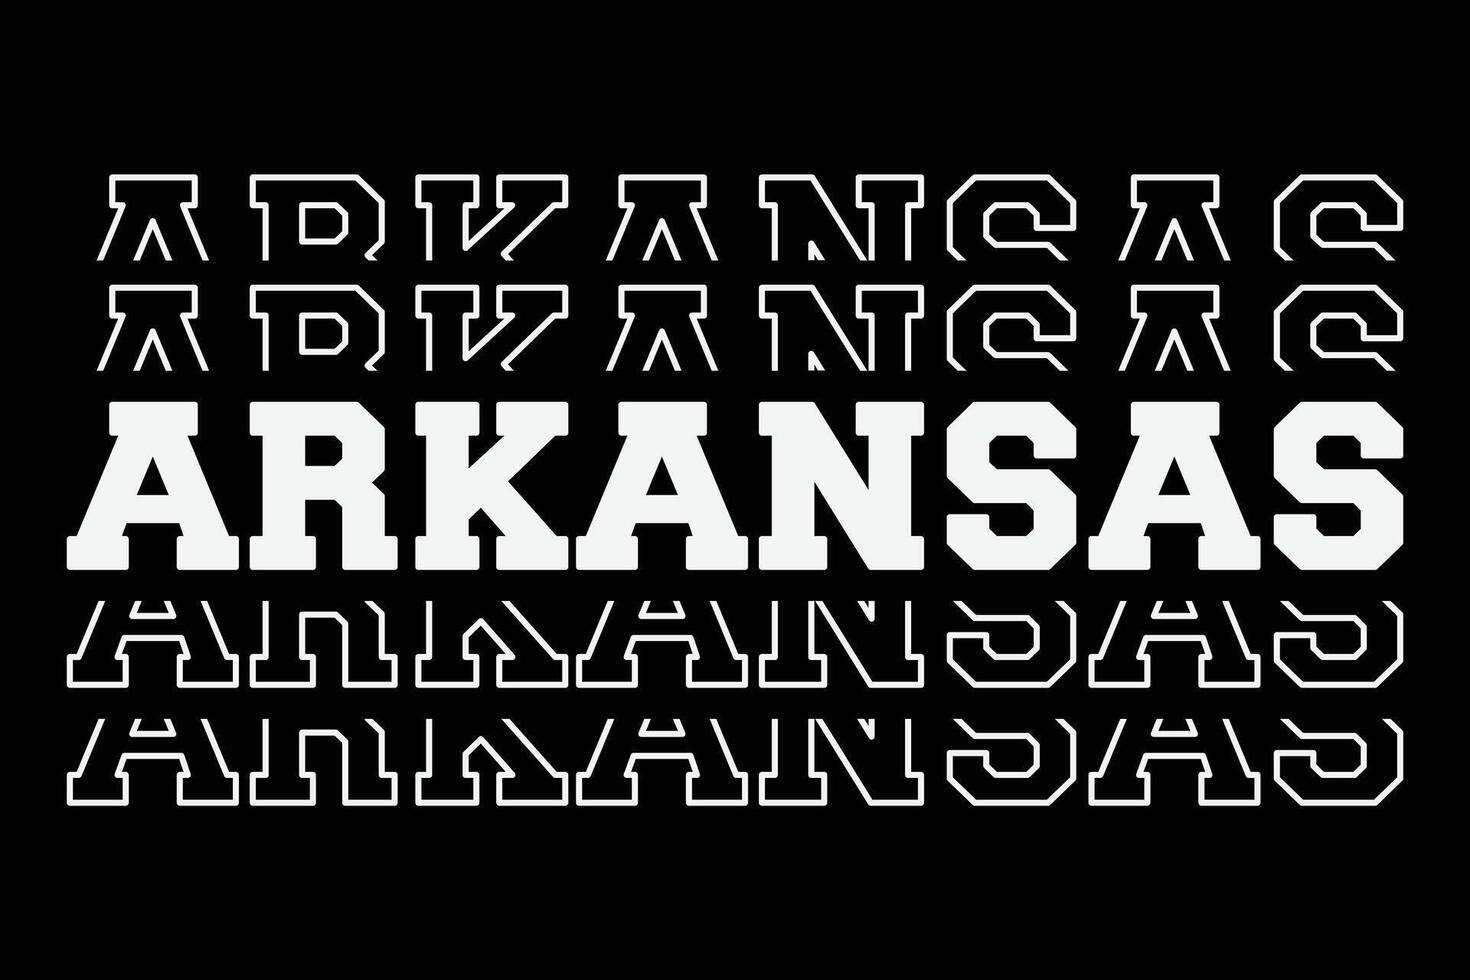 patriottisch Verenigde Staten van Amerika staat Arkansas t-shirt ontwerp vector